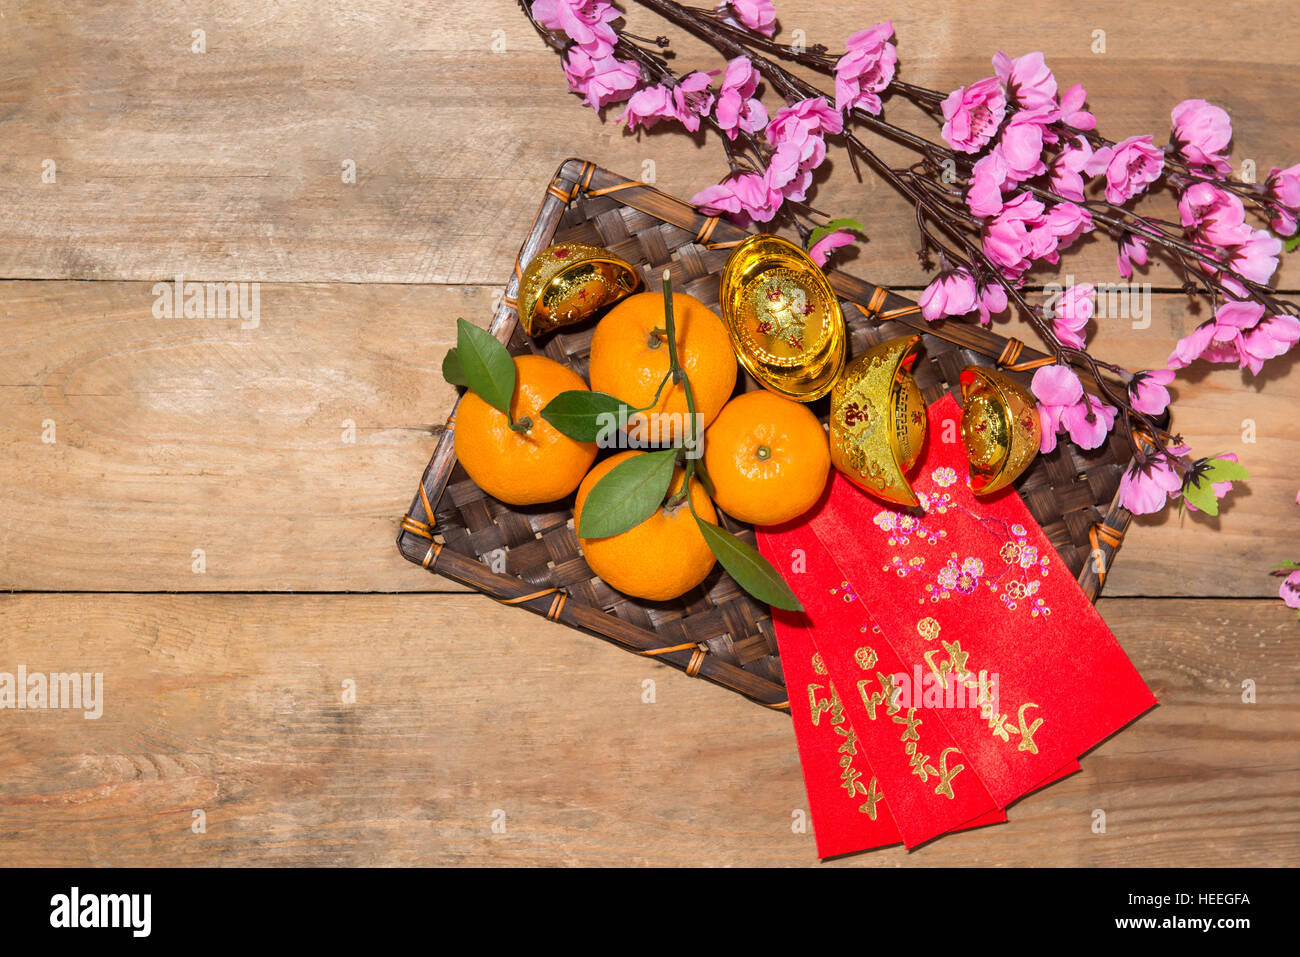 Mandarinas y Año Nuevo Lunar con el texto "Feliz Año Nuevo" en rojo en el bolsillo. Concepto de vacaciones Tet. Foto de stock